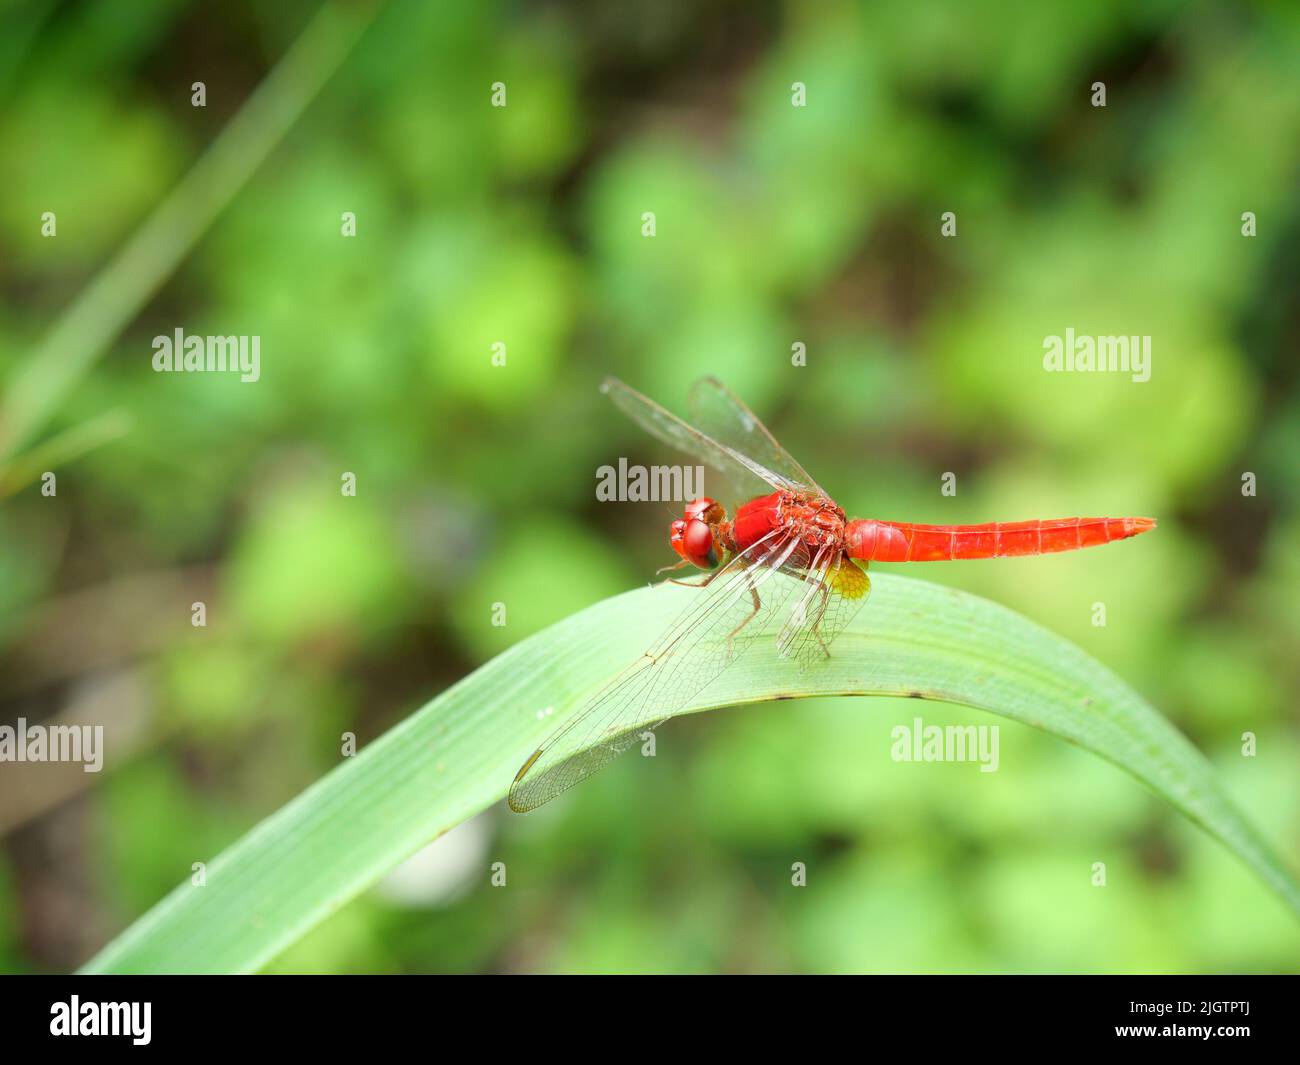 Scharlachrote Skimmer oder Karmesinfalter Libelle auf Blatt mit natürlichem grünen Hintergrund Stockfoto